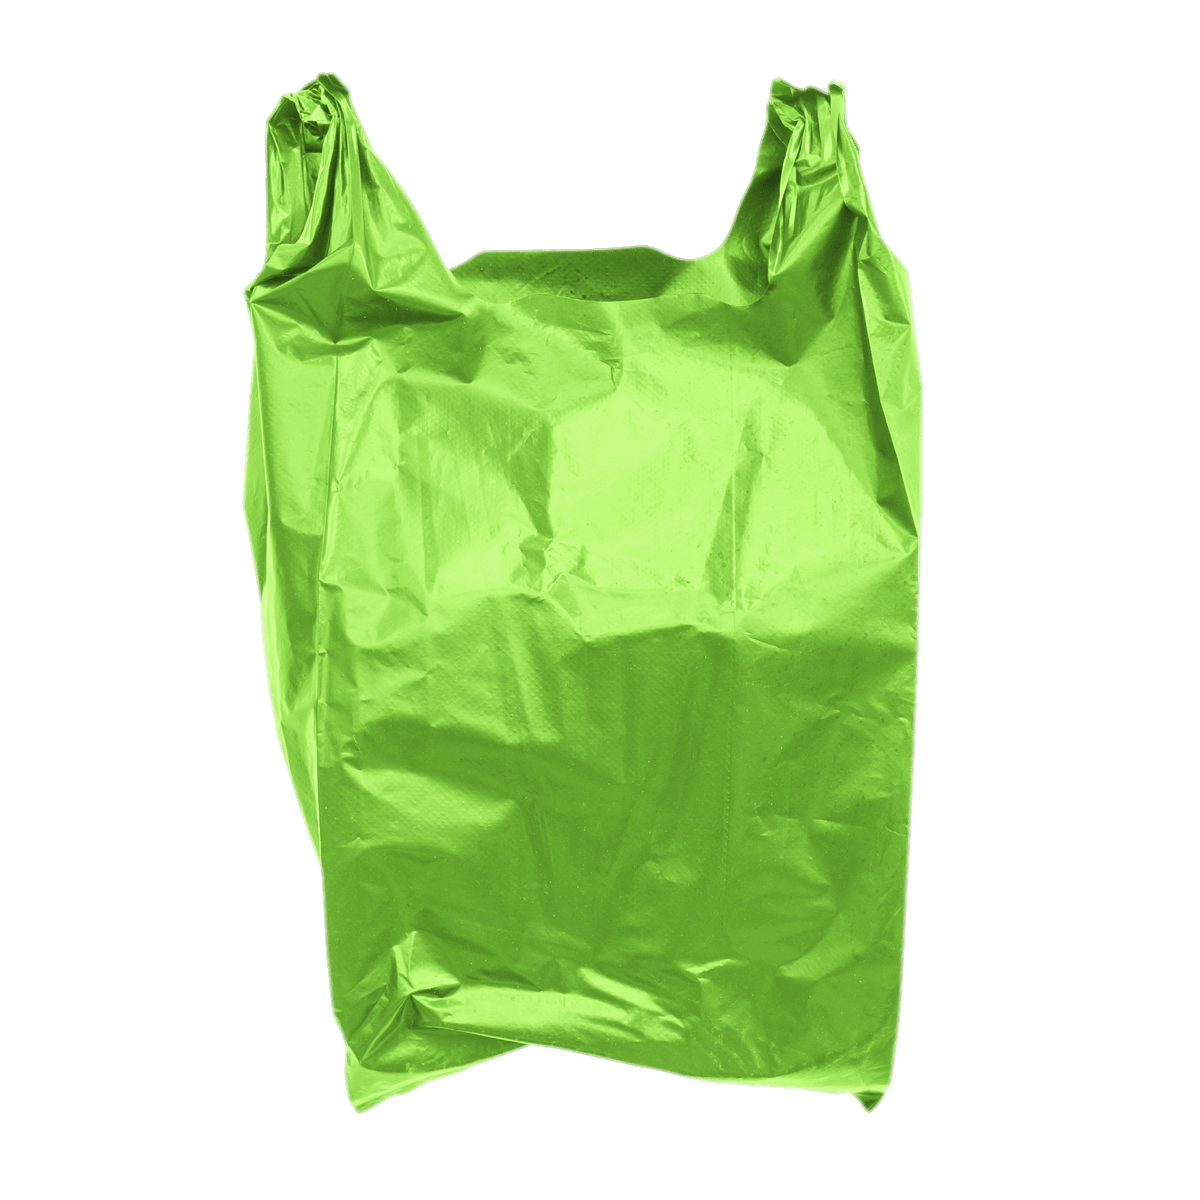 Transparent plastic bag vector PNG - Similar PNG